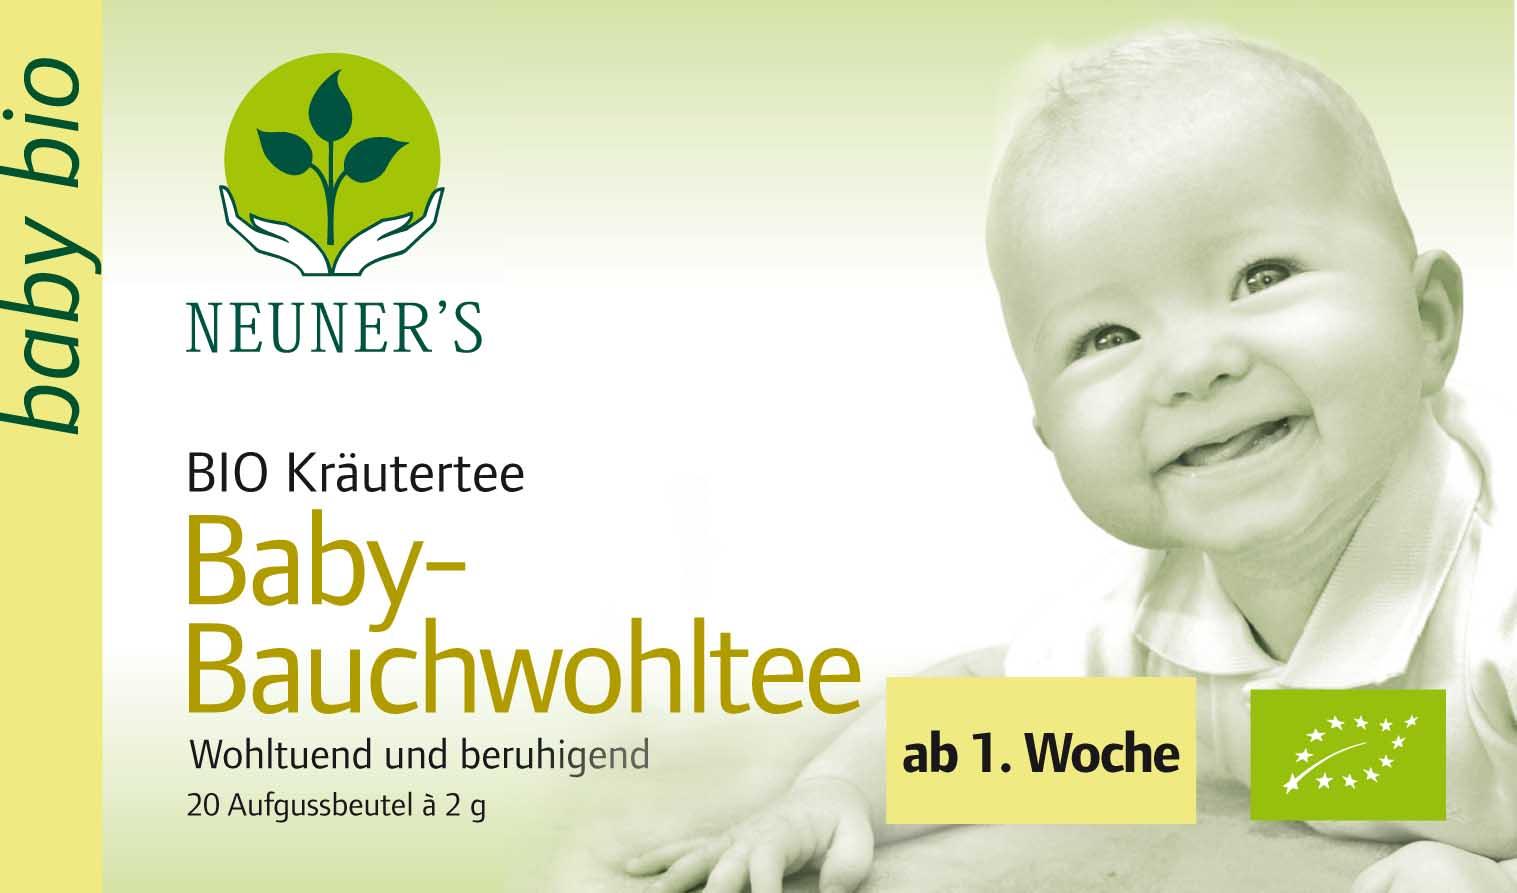 Neuner's Baby-Bauchwohltee BIO